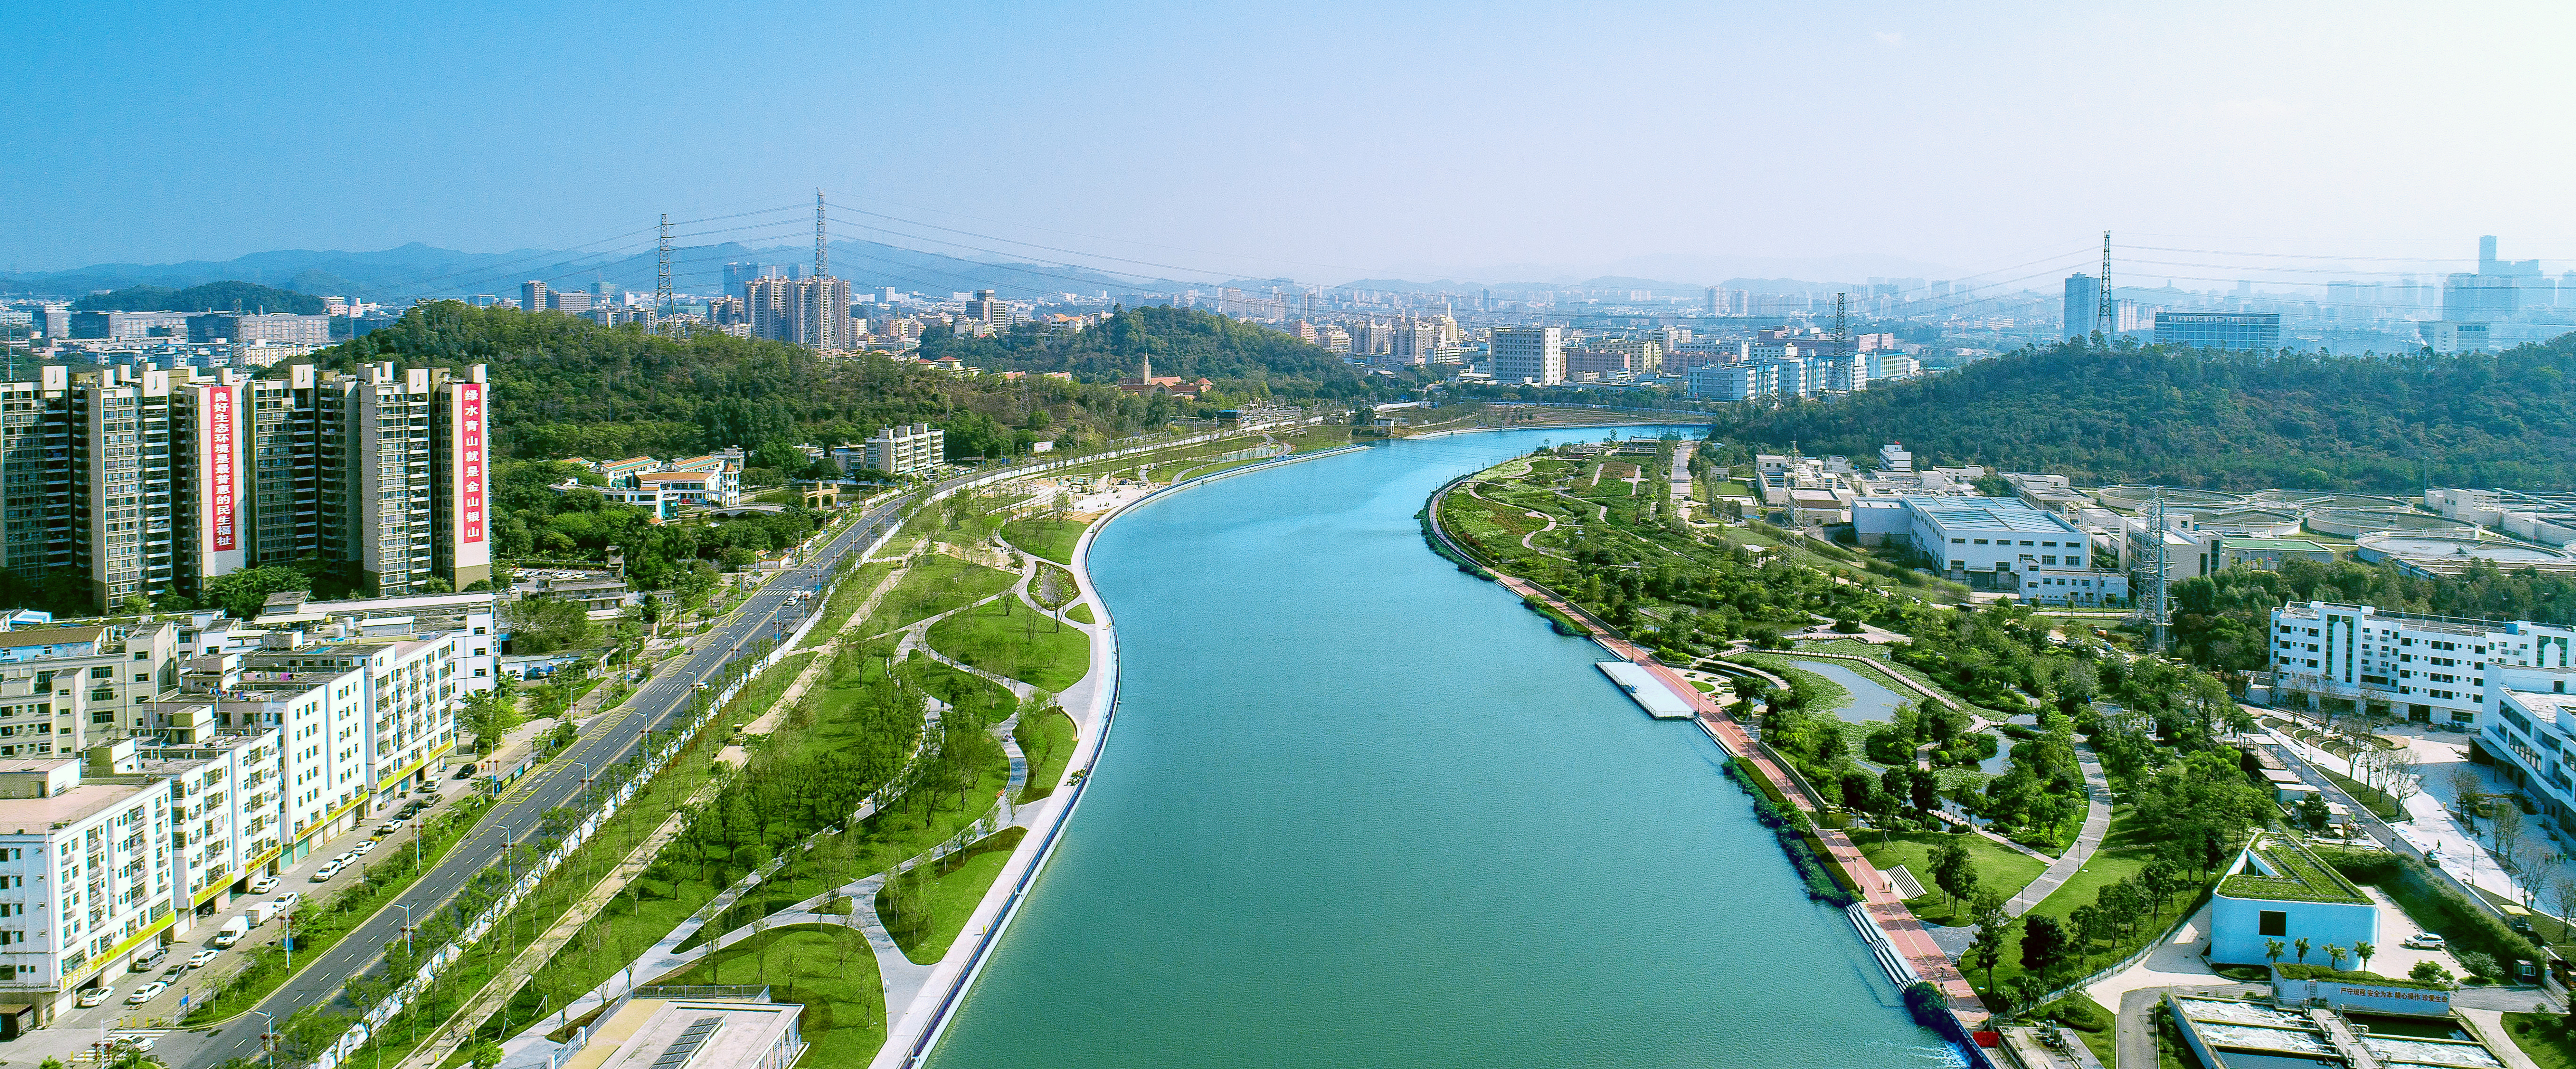 深圳茅洲河流域水环境综合整治工程